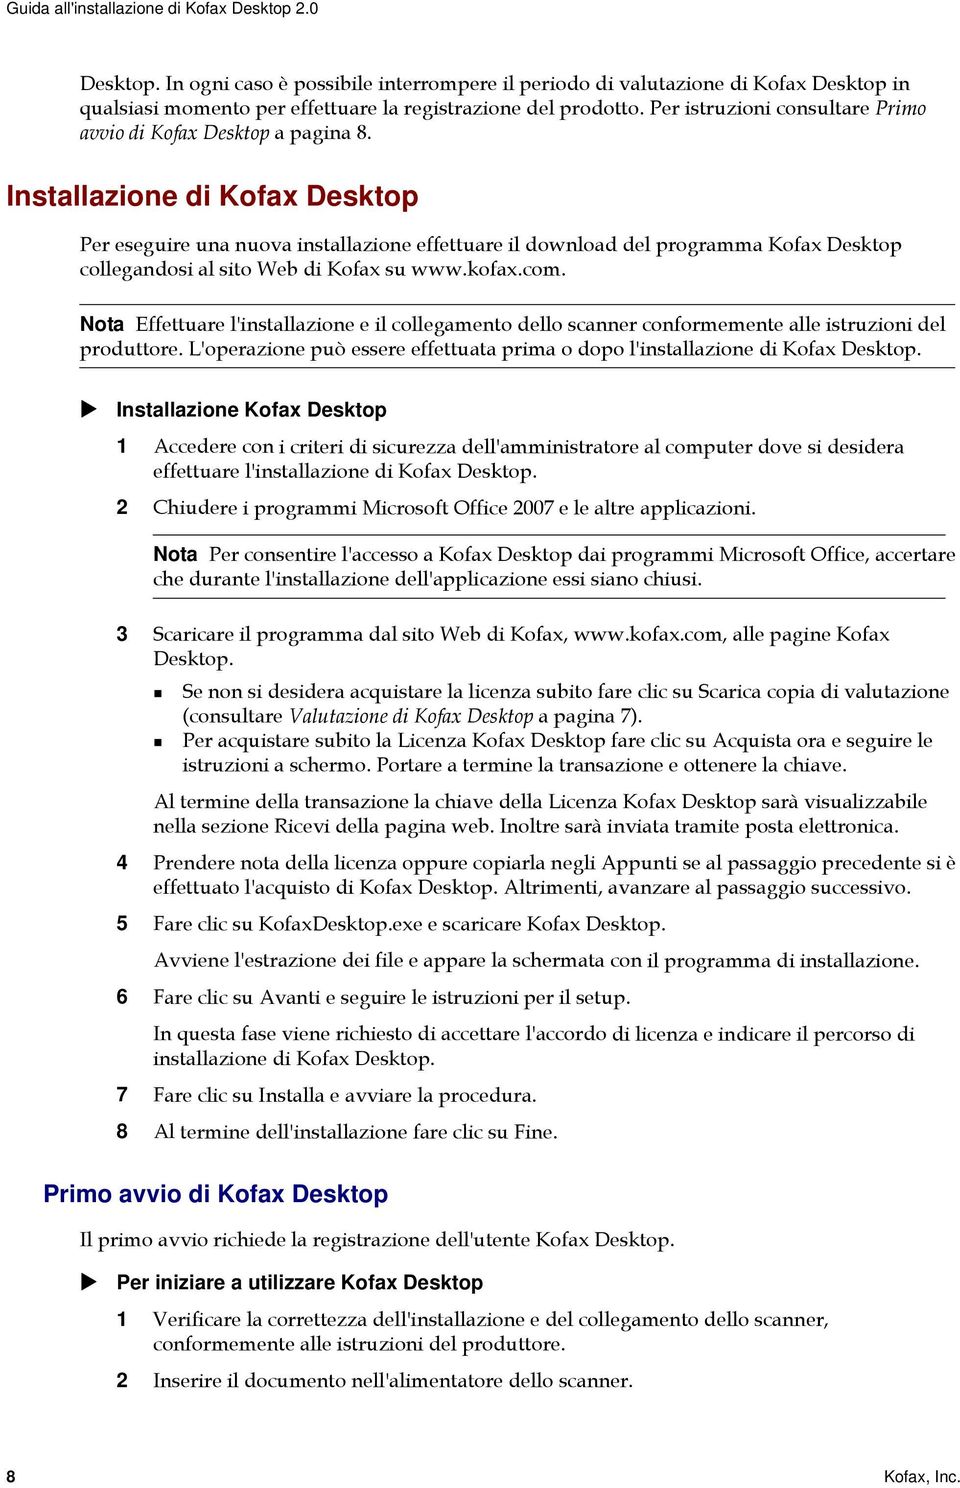 Per istruzioni consultare Primo avvio di Kofax Desktop a pagina 8.